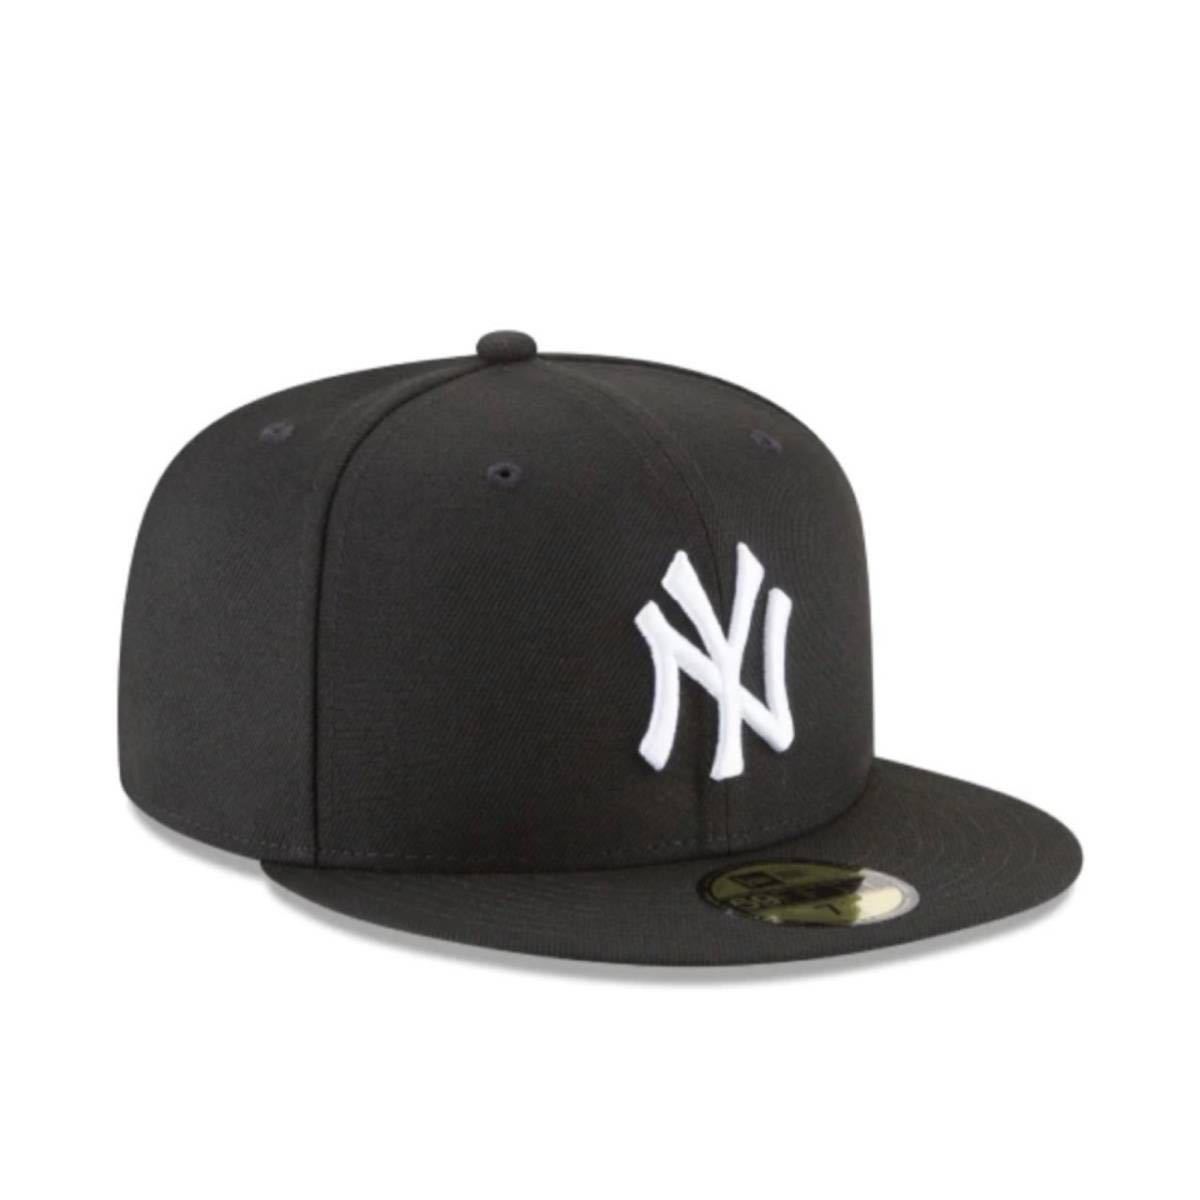 ☆正規品新品☆NEWERA 59FIFTY ニューエラ キャップ 帽子 野球帽 5950シリーズ ヤンキース ブラック×ホワイト 59.6cm ユニセックス